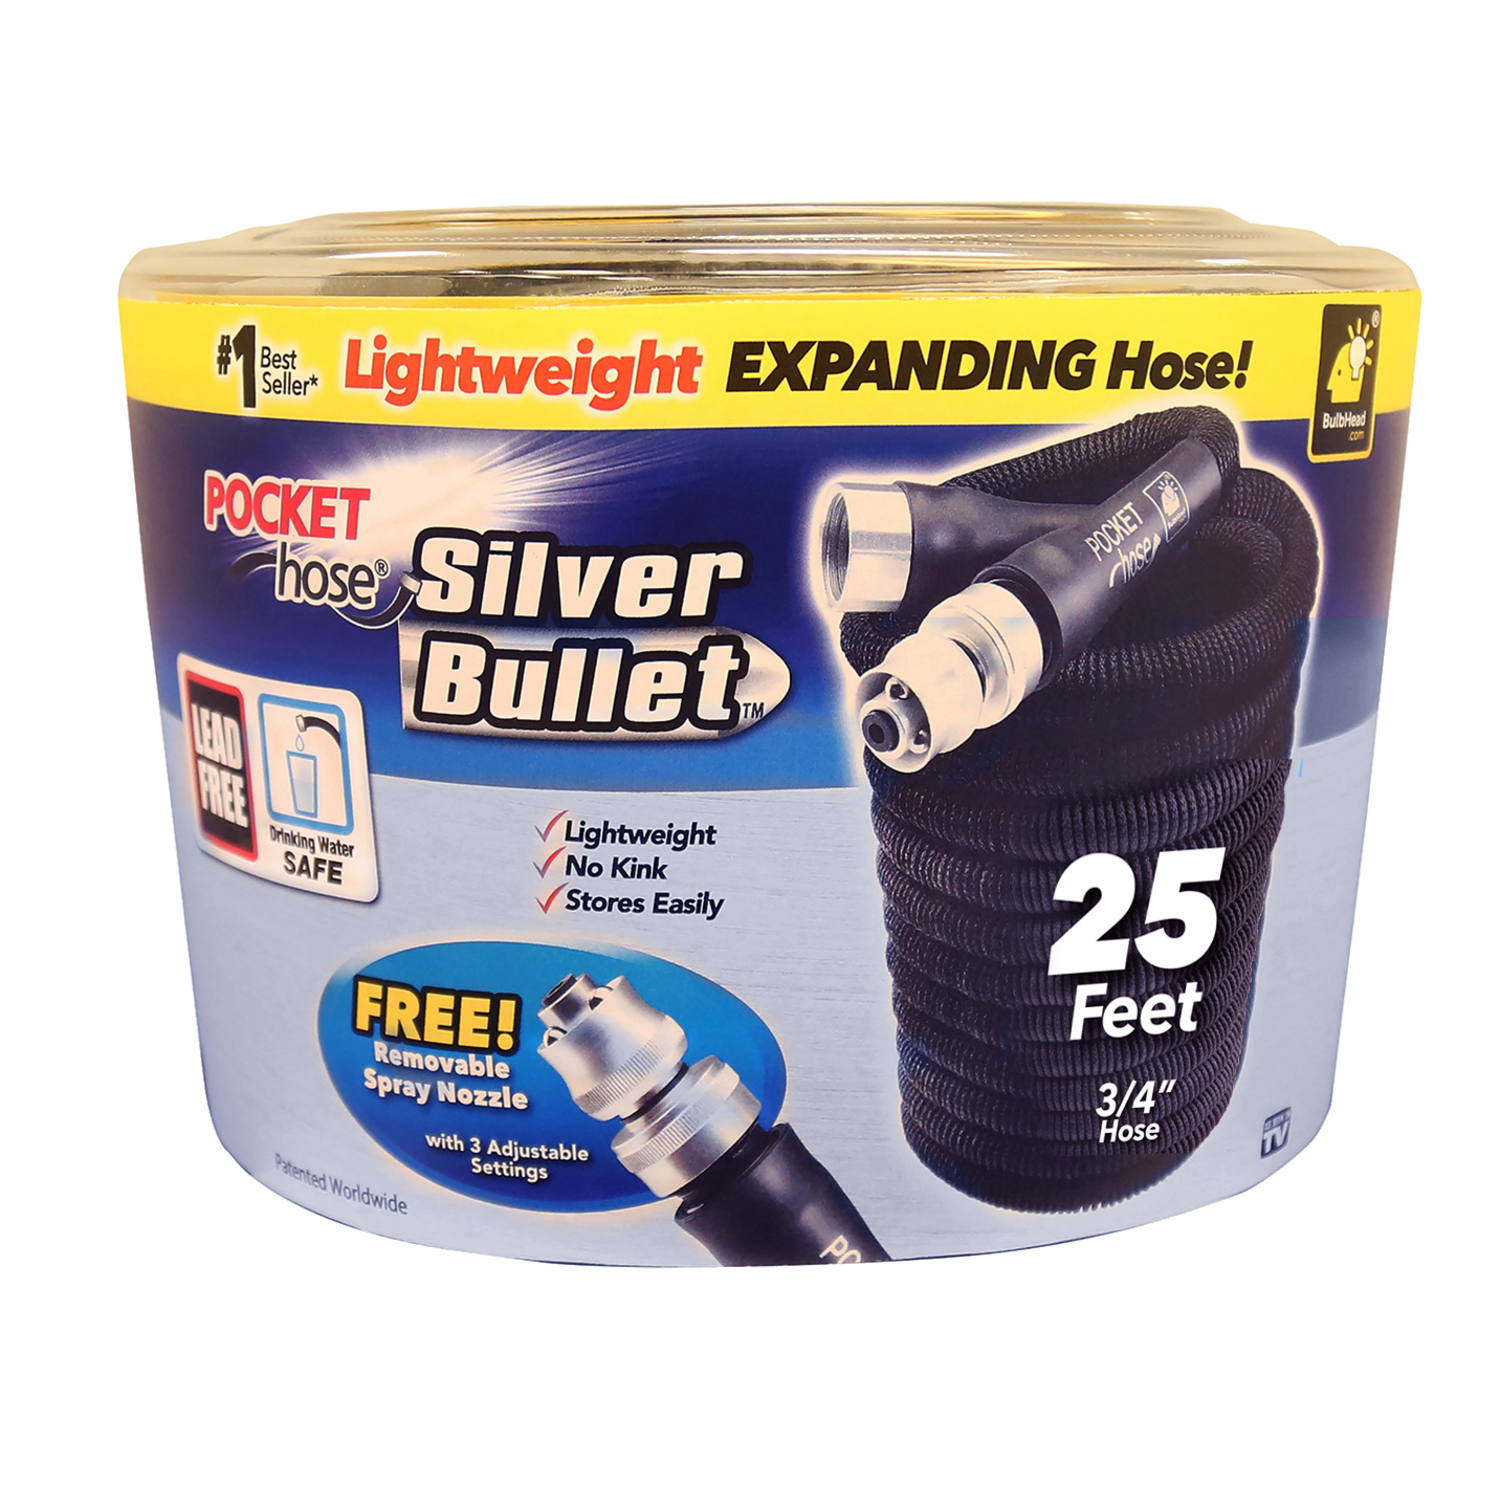 Photos - Garden Hose Pocket Hose Silver Bullet 3/4 in. D X 25 ft. L Expandable Lightweight Gard